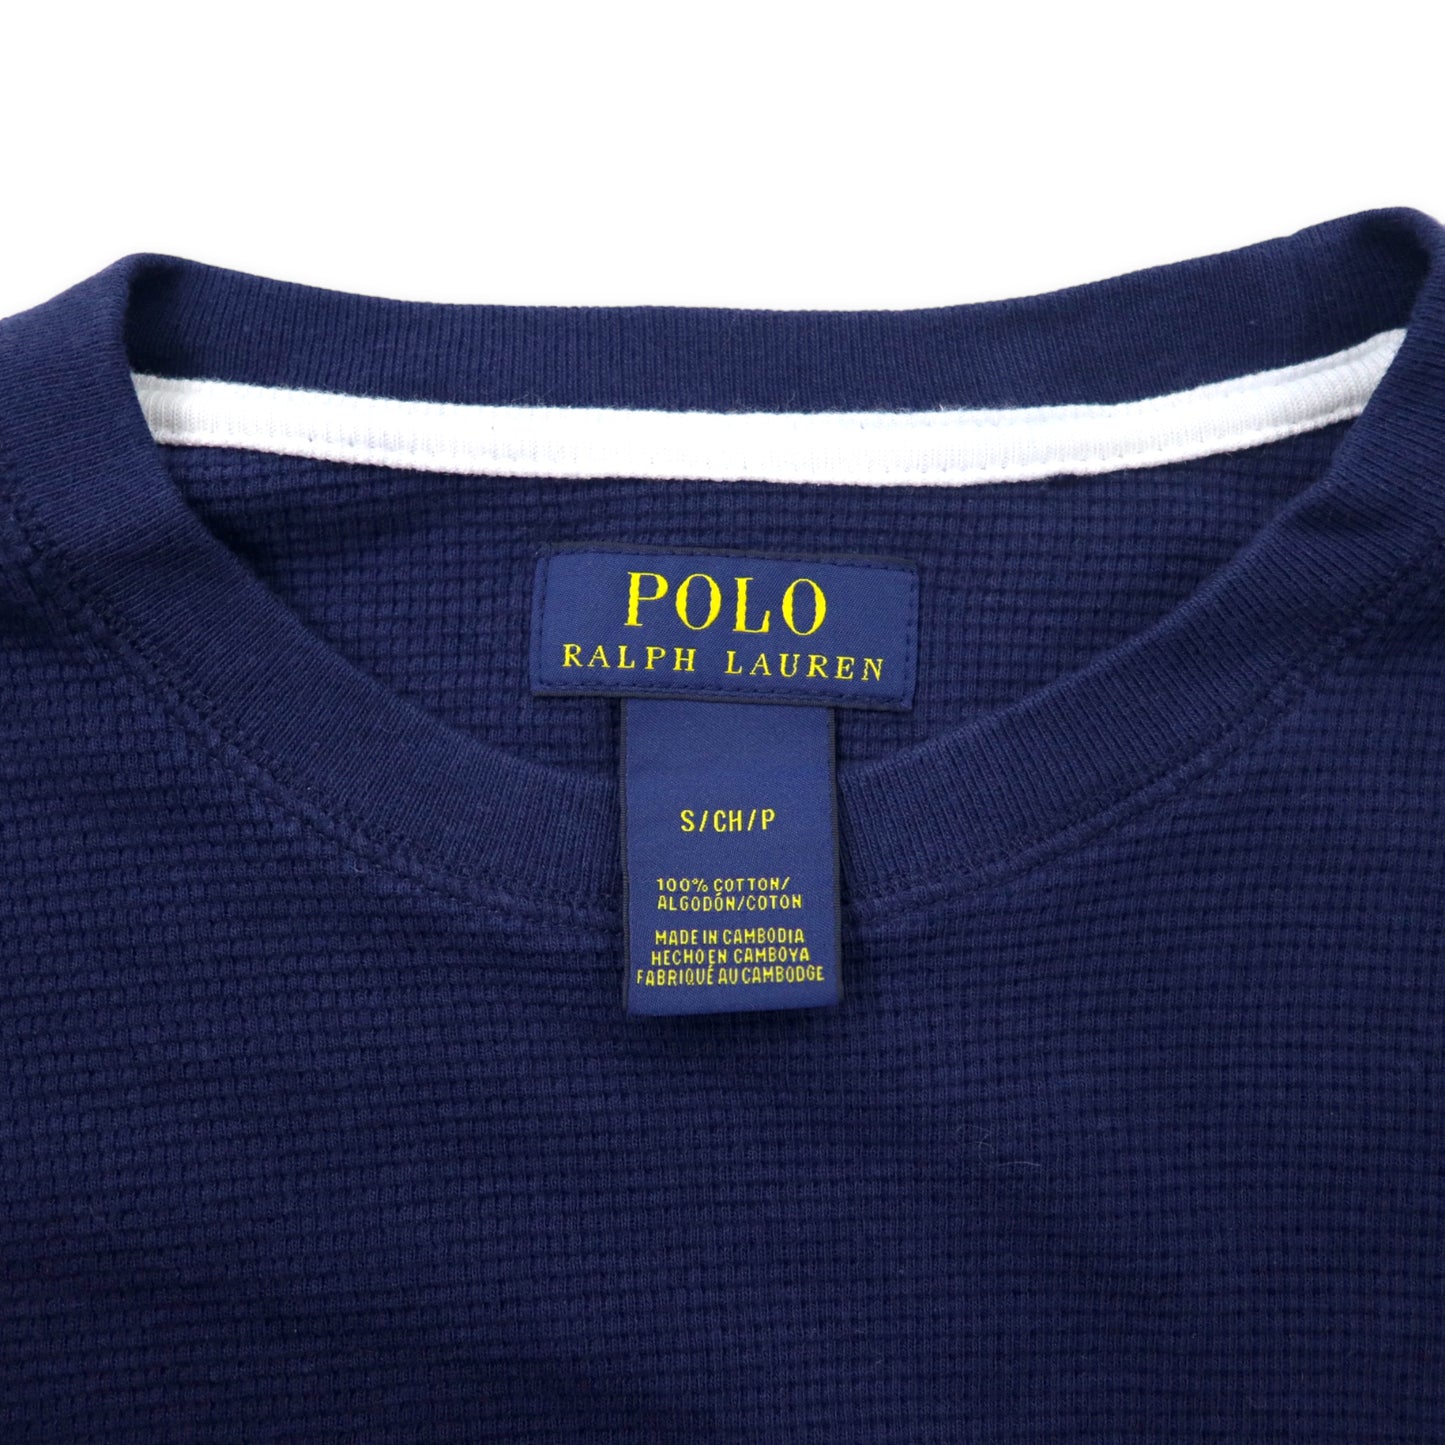 POLO RALPH LAUREN サーマル ロングスリーブ Tシャツ ロンT S ネイビー コットン スモールポニー刺繍